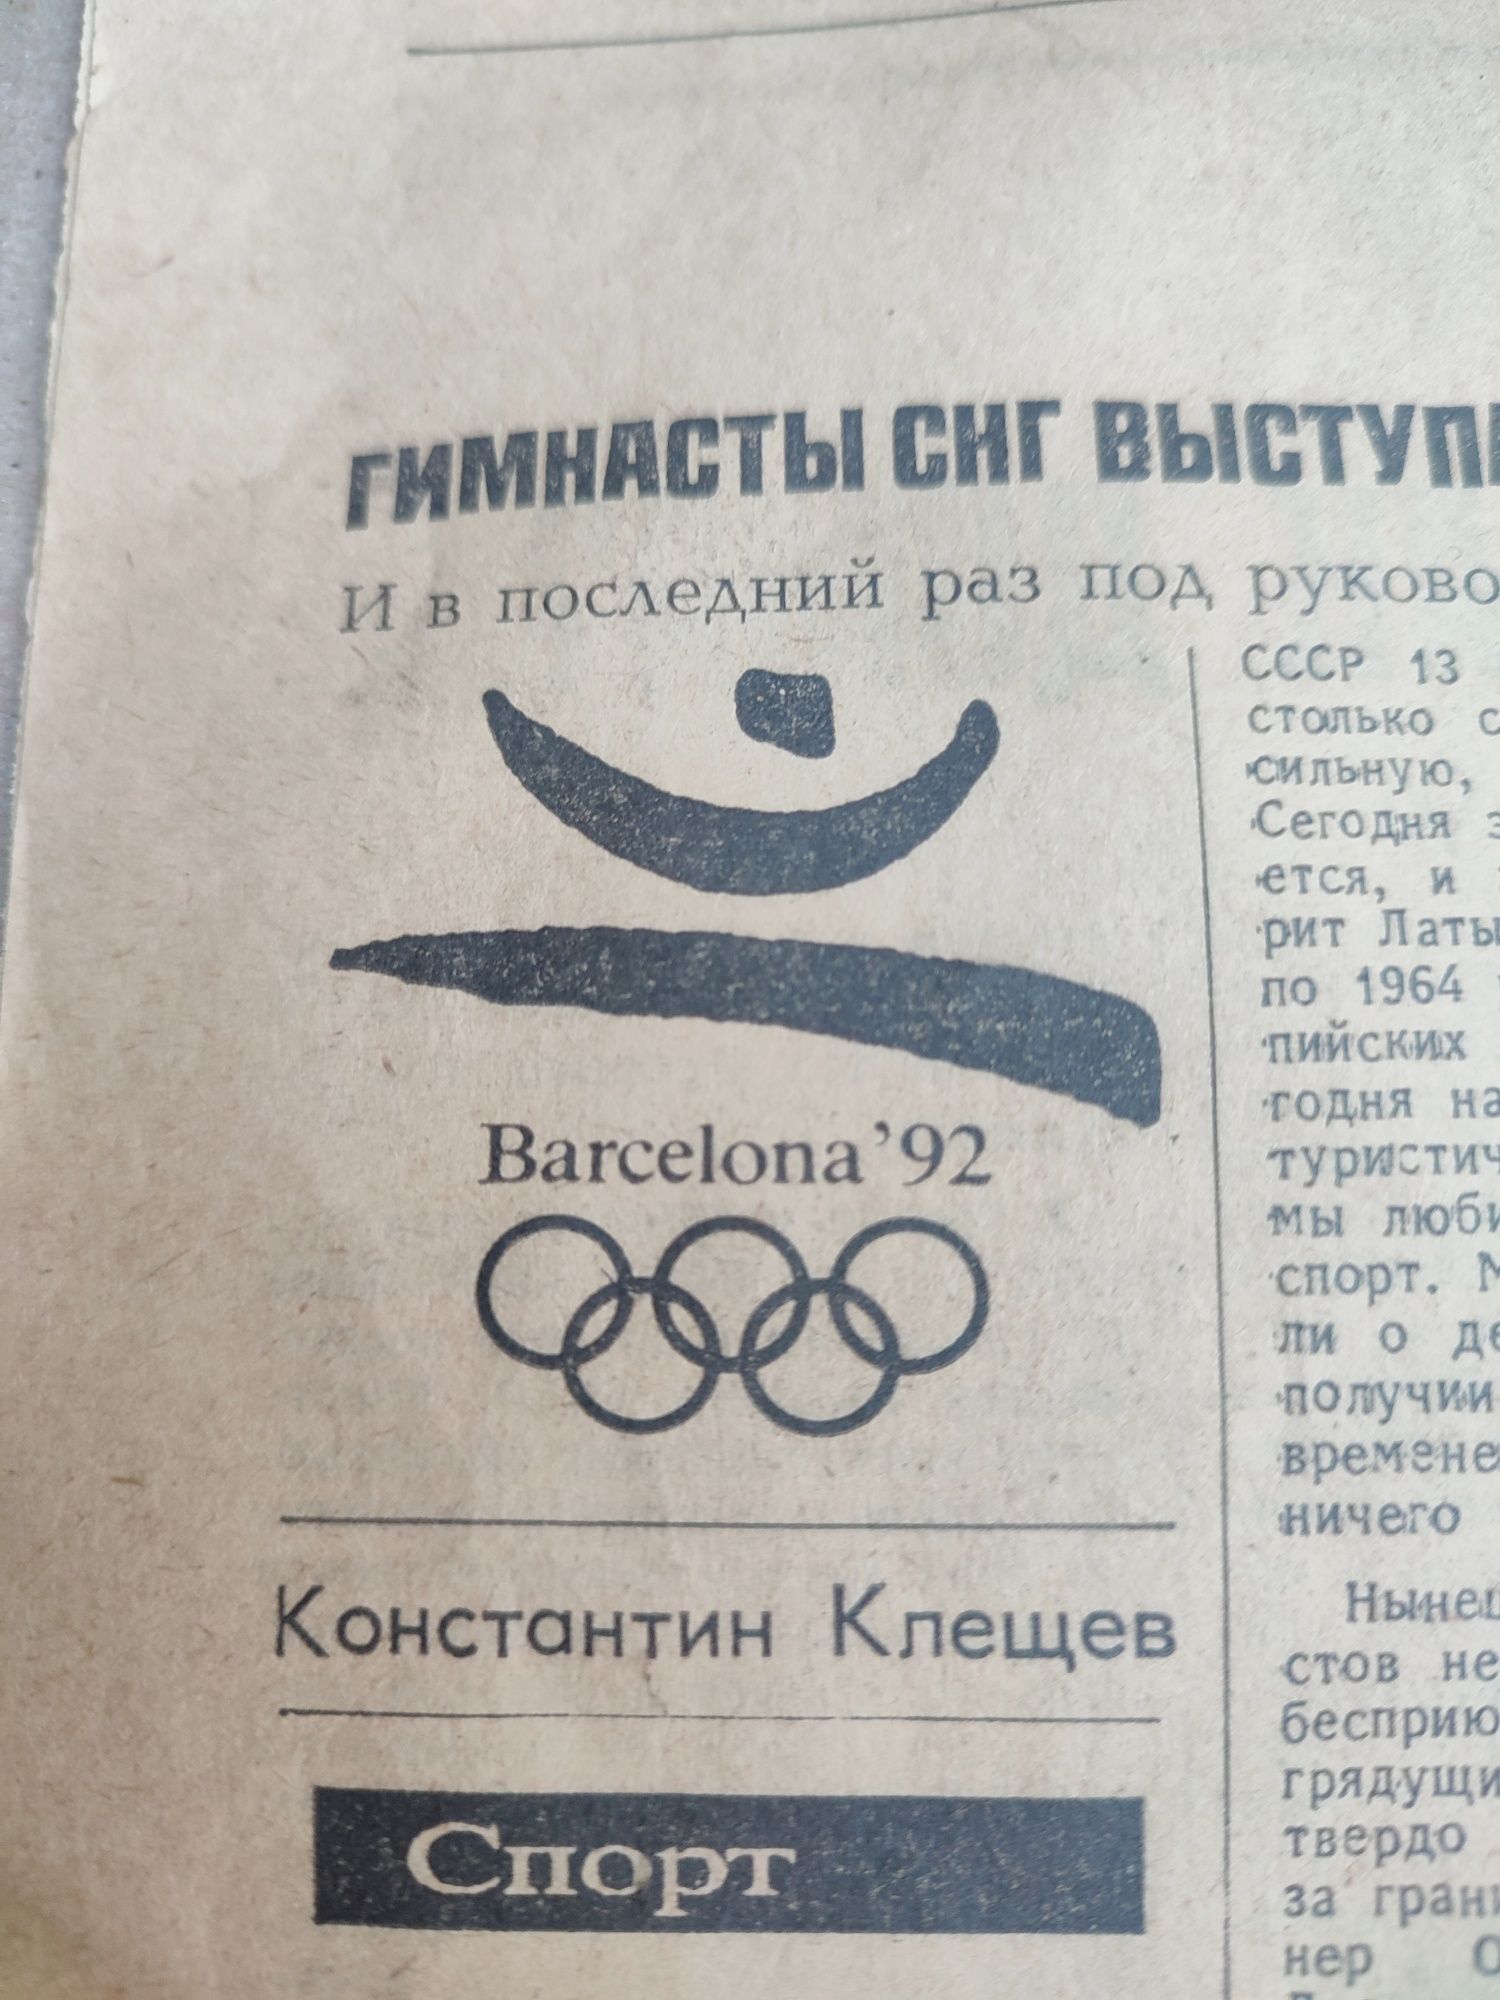 Развертка старой газеты от 31.07.1992